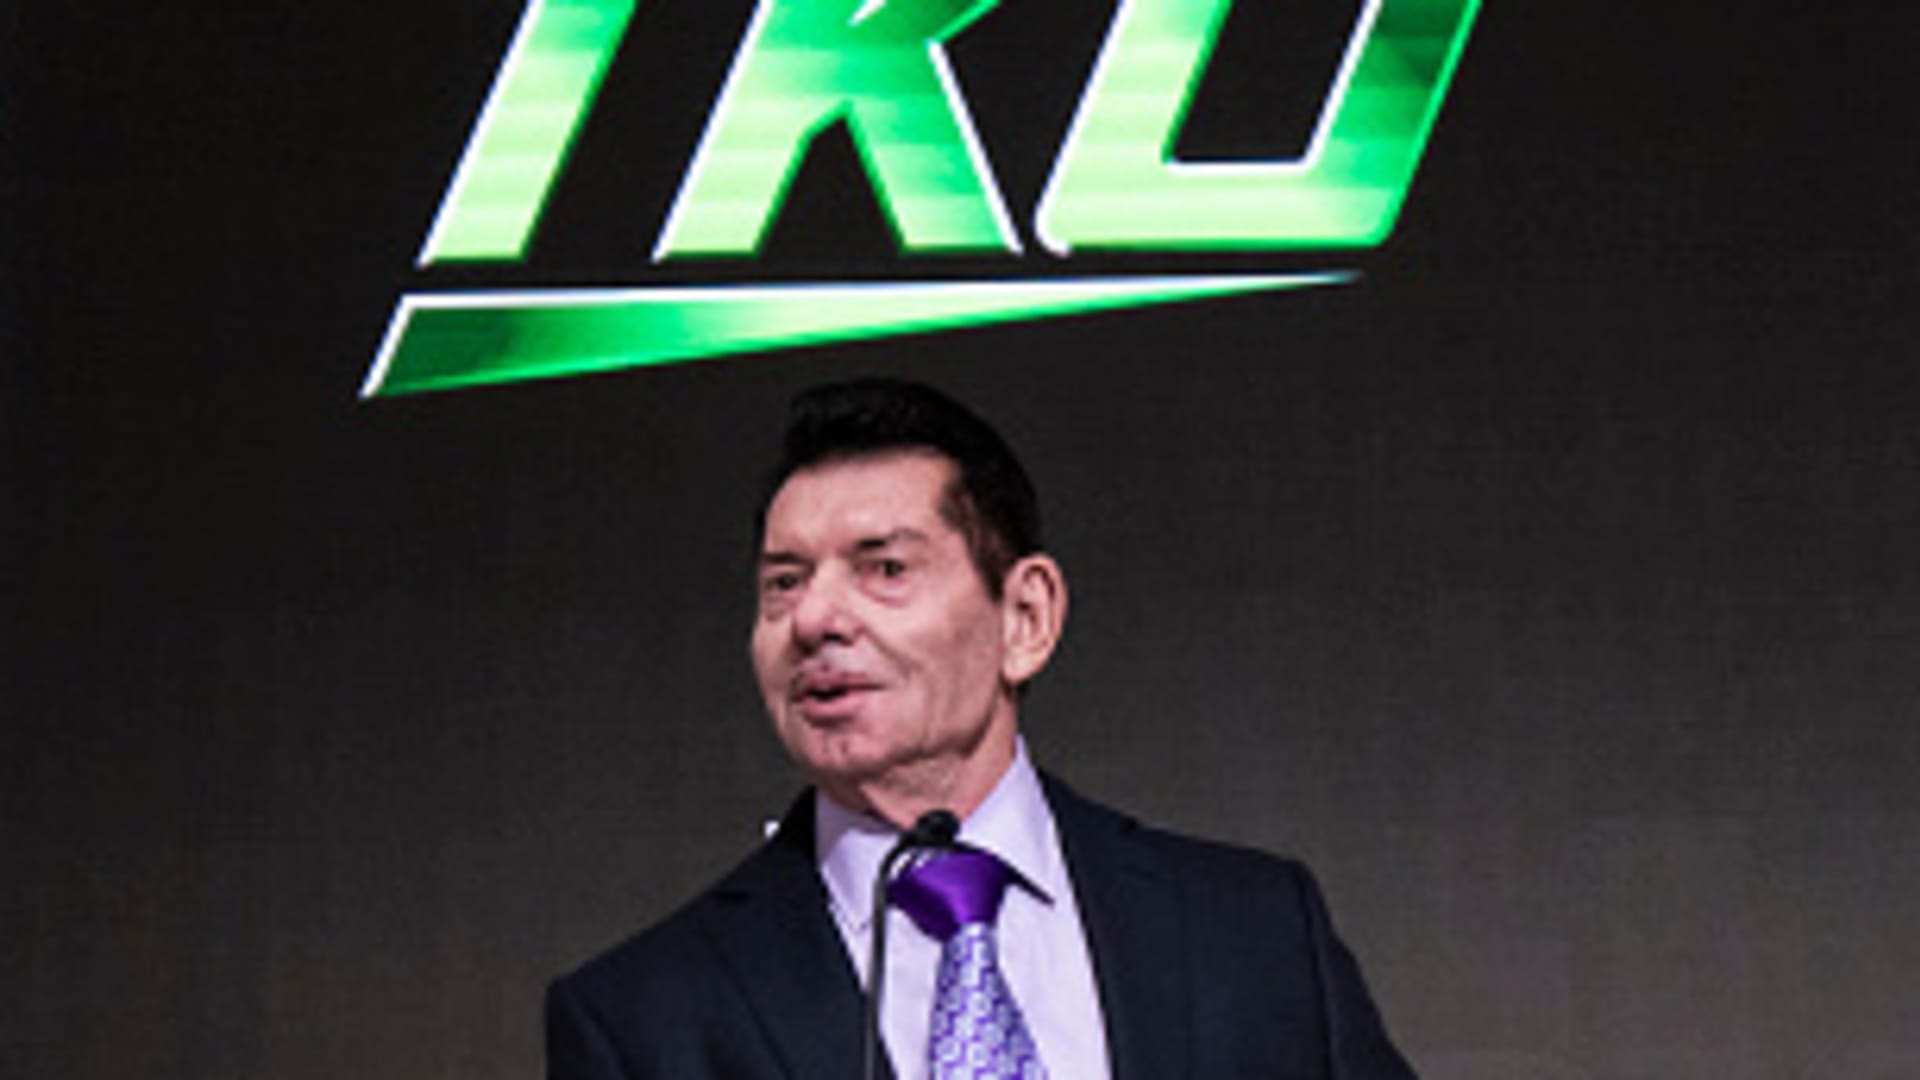 Le patron de la WWE, Vince McMahon, poursuivi pour agression sexuelle et trafic présumé